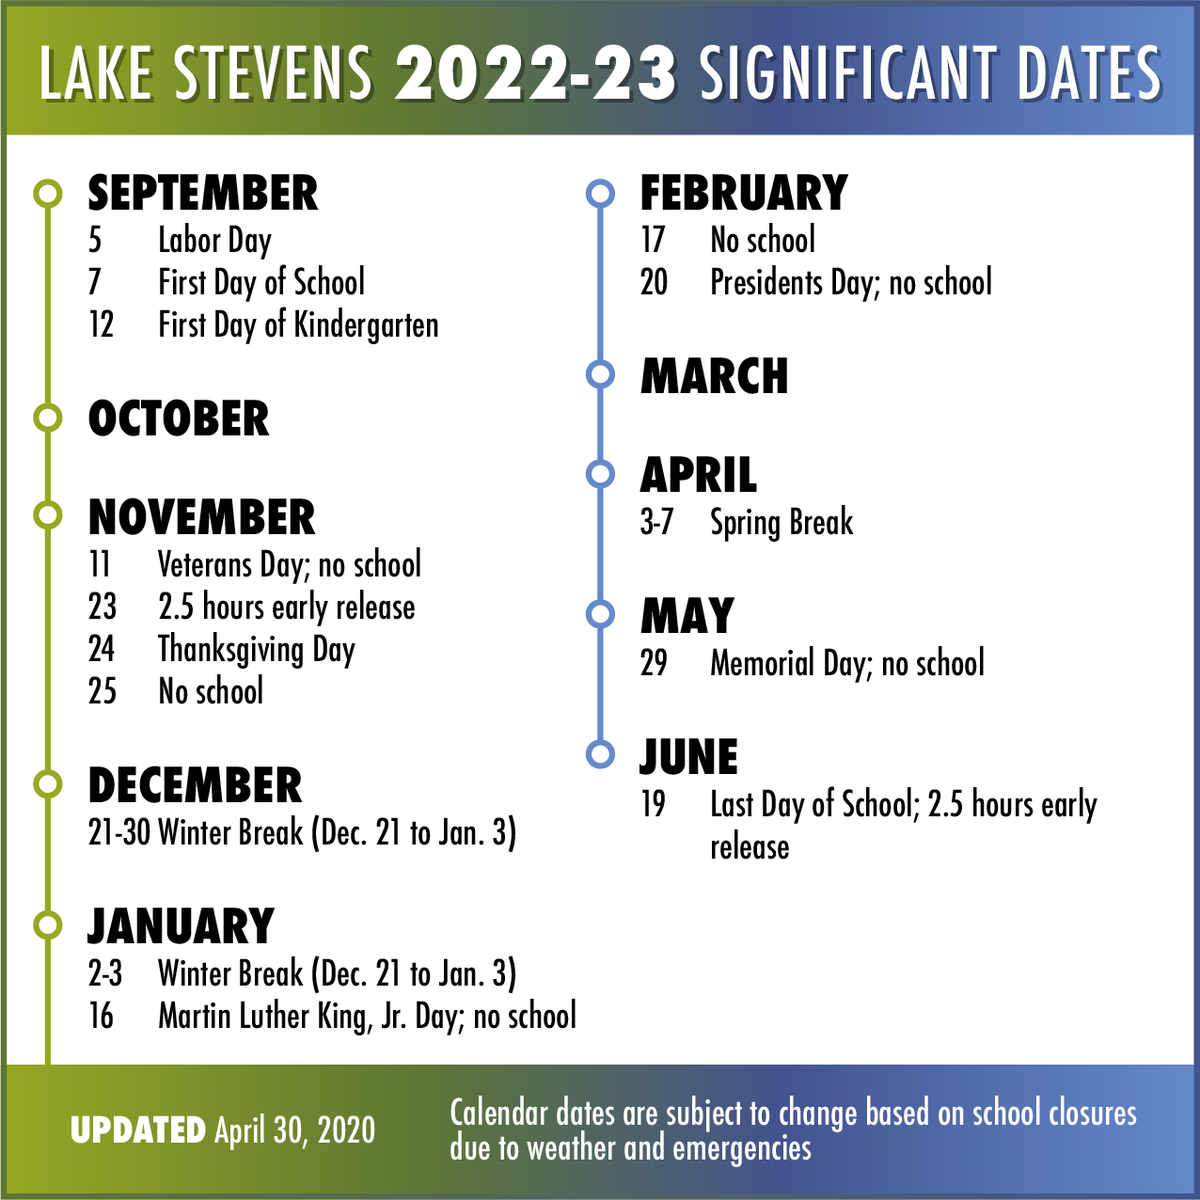 lshs calendar 2021 Lake Stevens Sd On Twitter Calendar Updates The Last Day Of School Is Friday June 19 The Last Day Of School For Seniors Is Friday June 12 Calendars For The 2020 21 2021 22 lshs calendar 2021